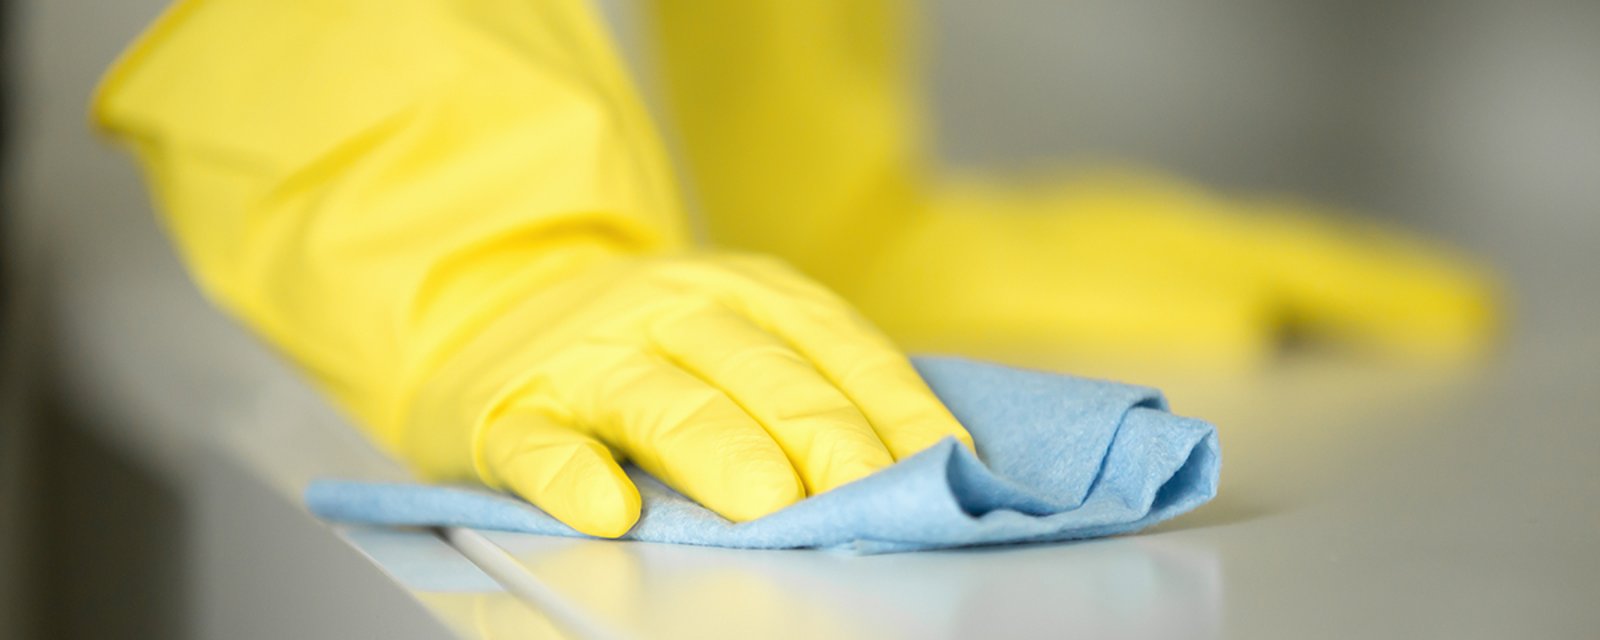 Comment bien nettoyer votre maison pour éviter la propagation du coronavirus